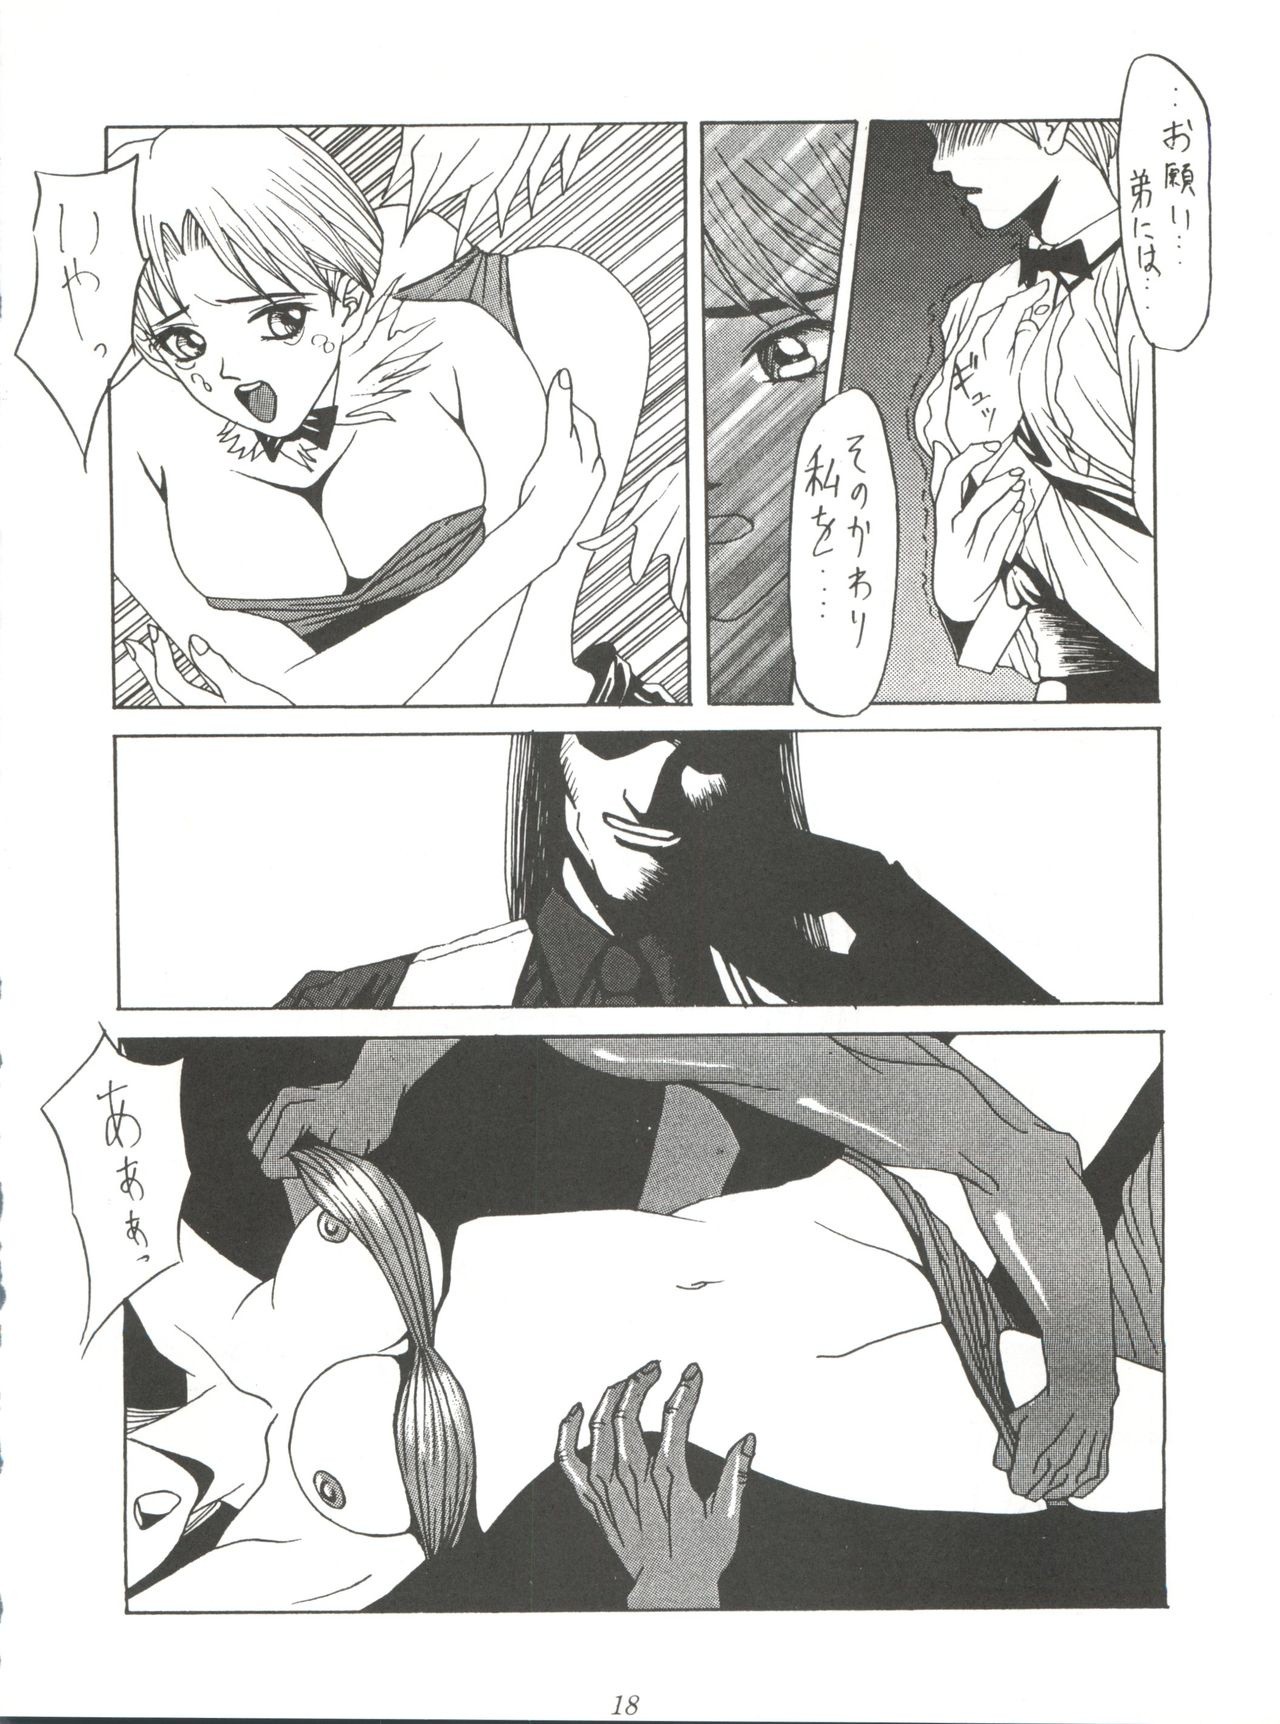 Yuuki and Yume and Mukubo's Japanese hentai manga picture 15